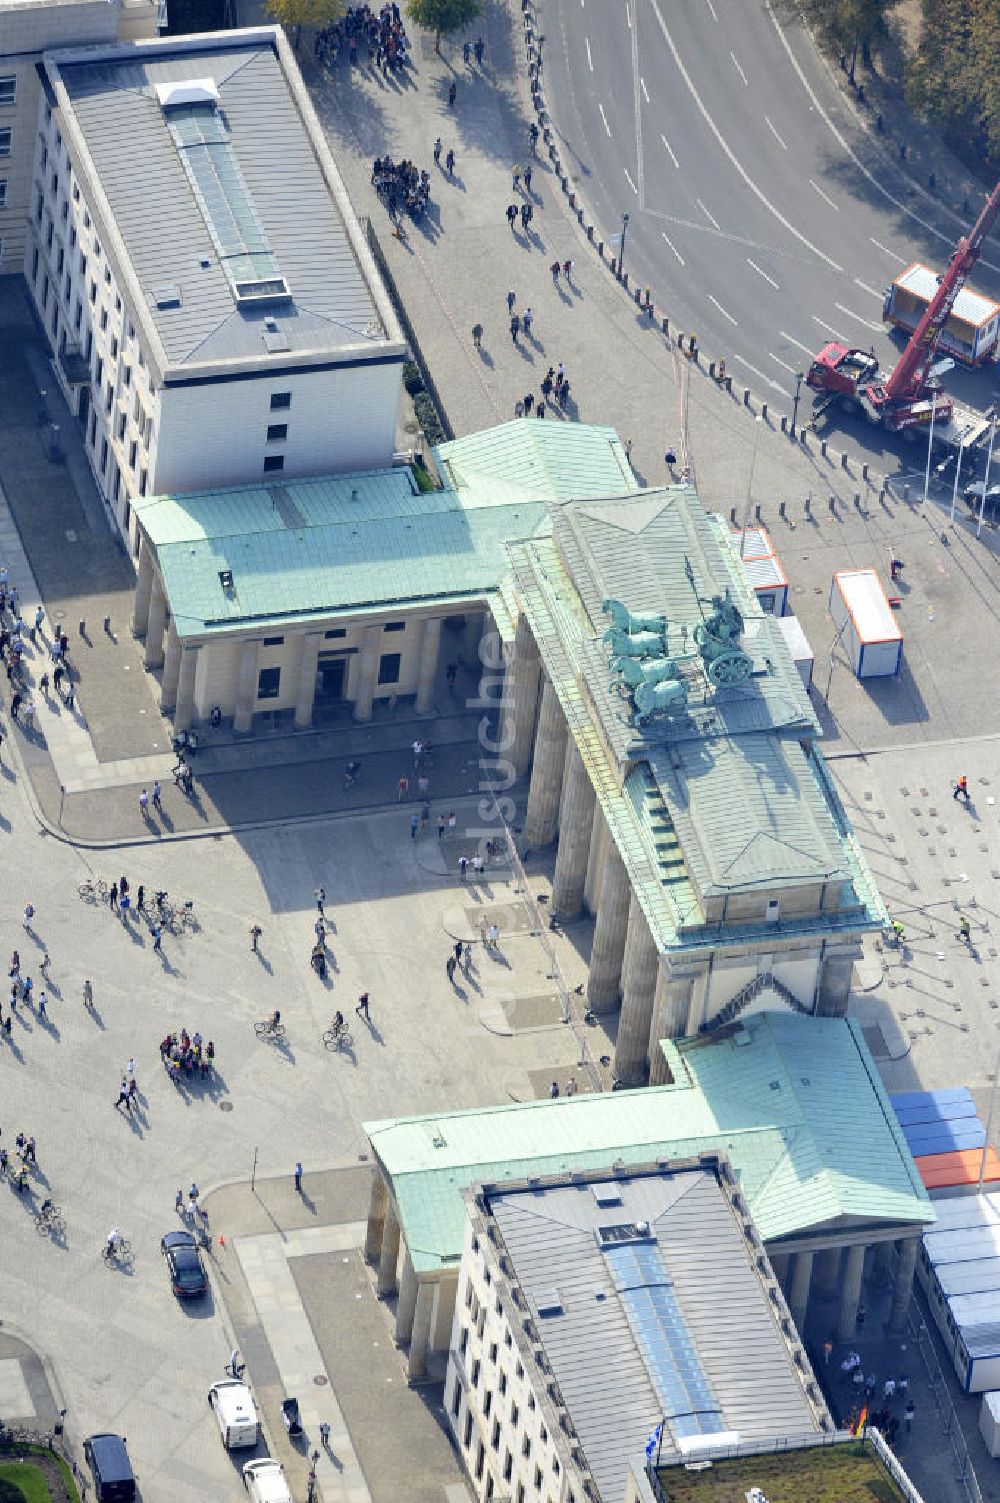 Berlin Mitte von oben - Sehenswürdigkeit Brandenburger Tor am Pariser Platz in Berlin-Mitte